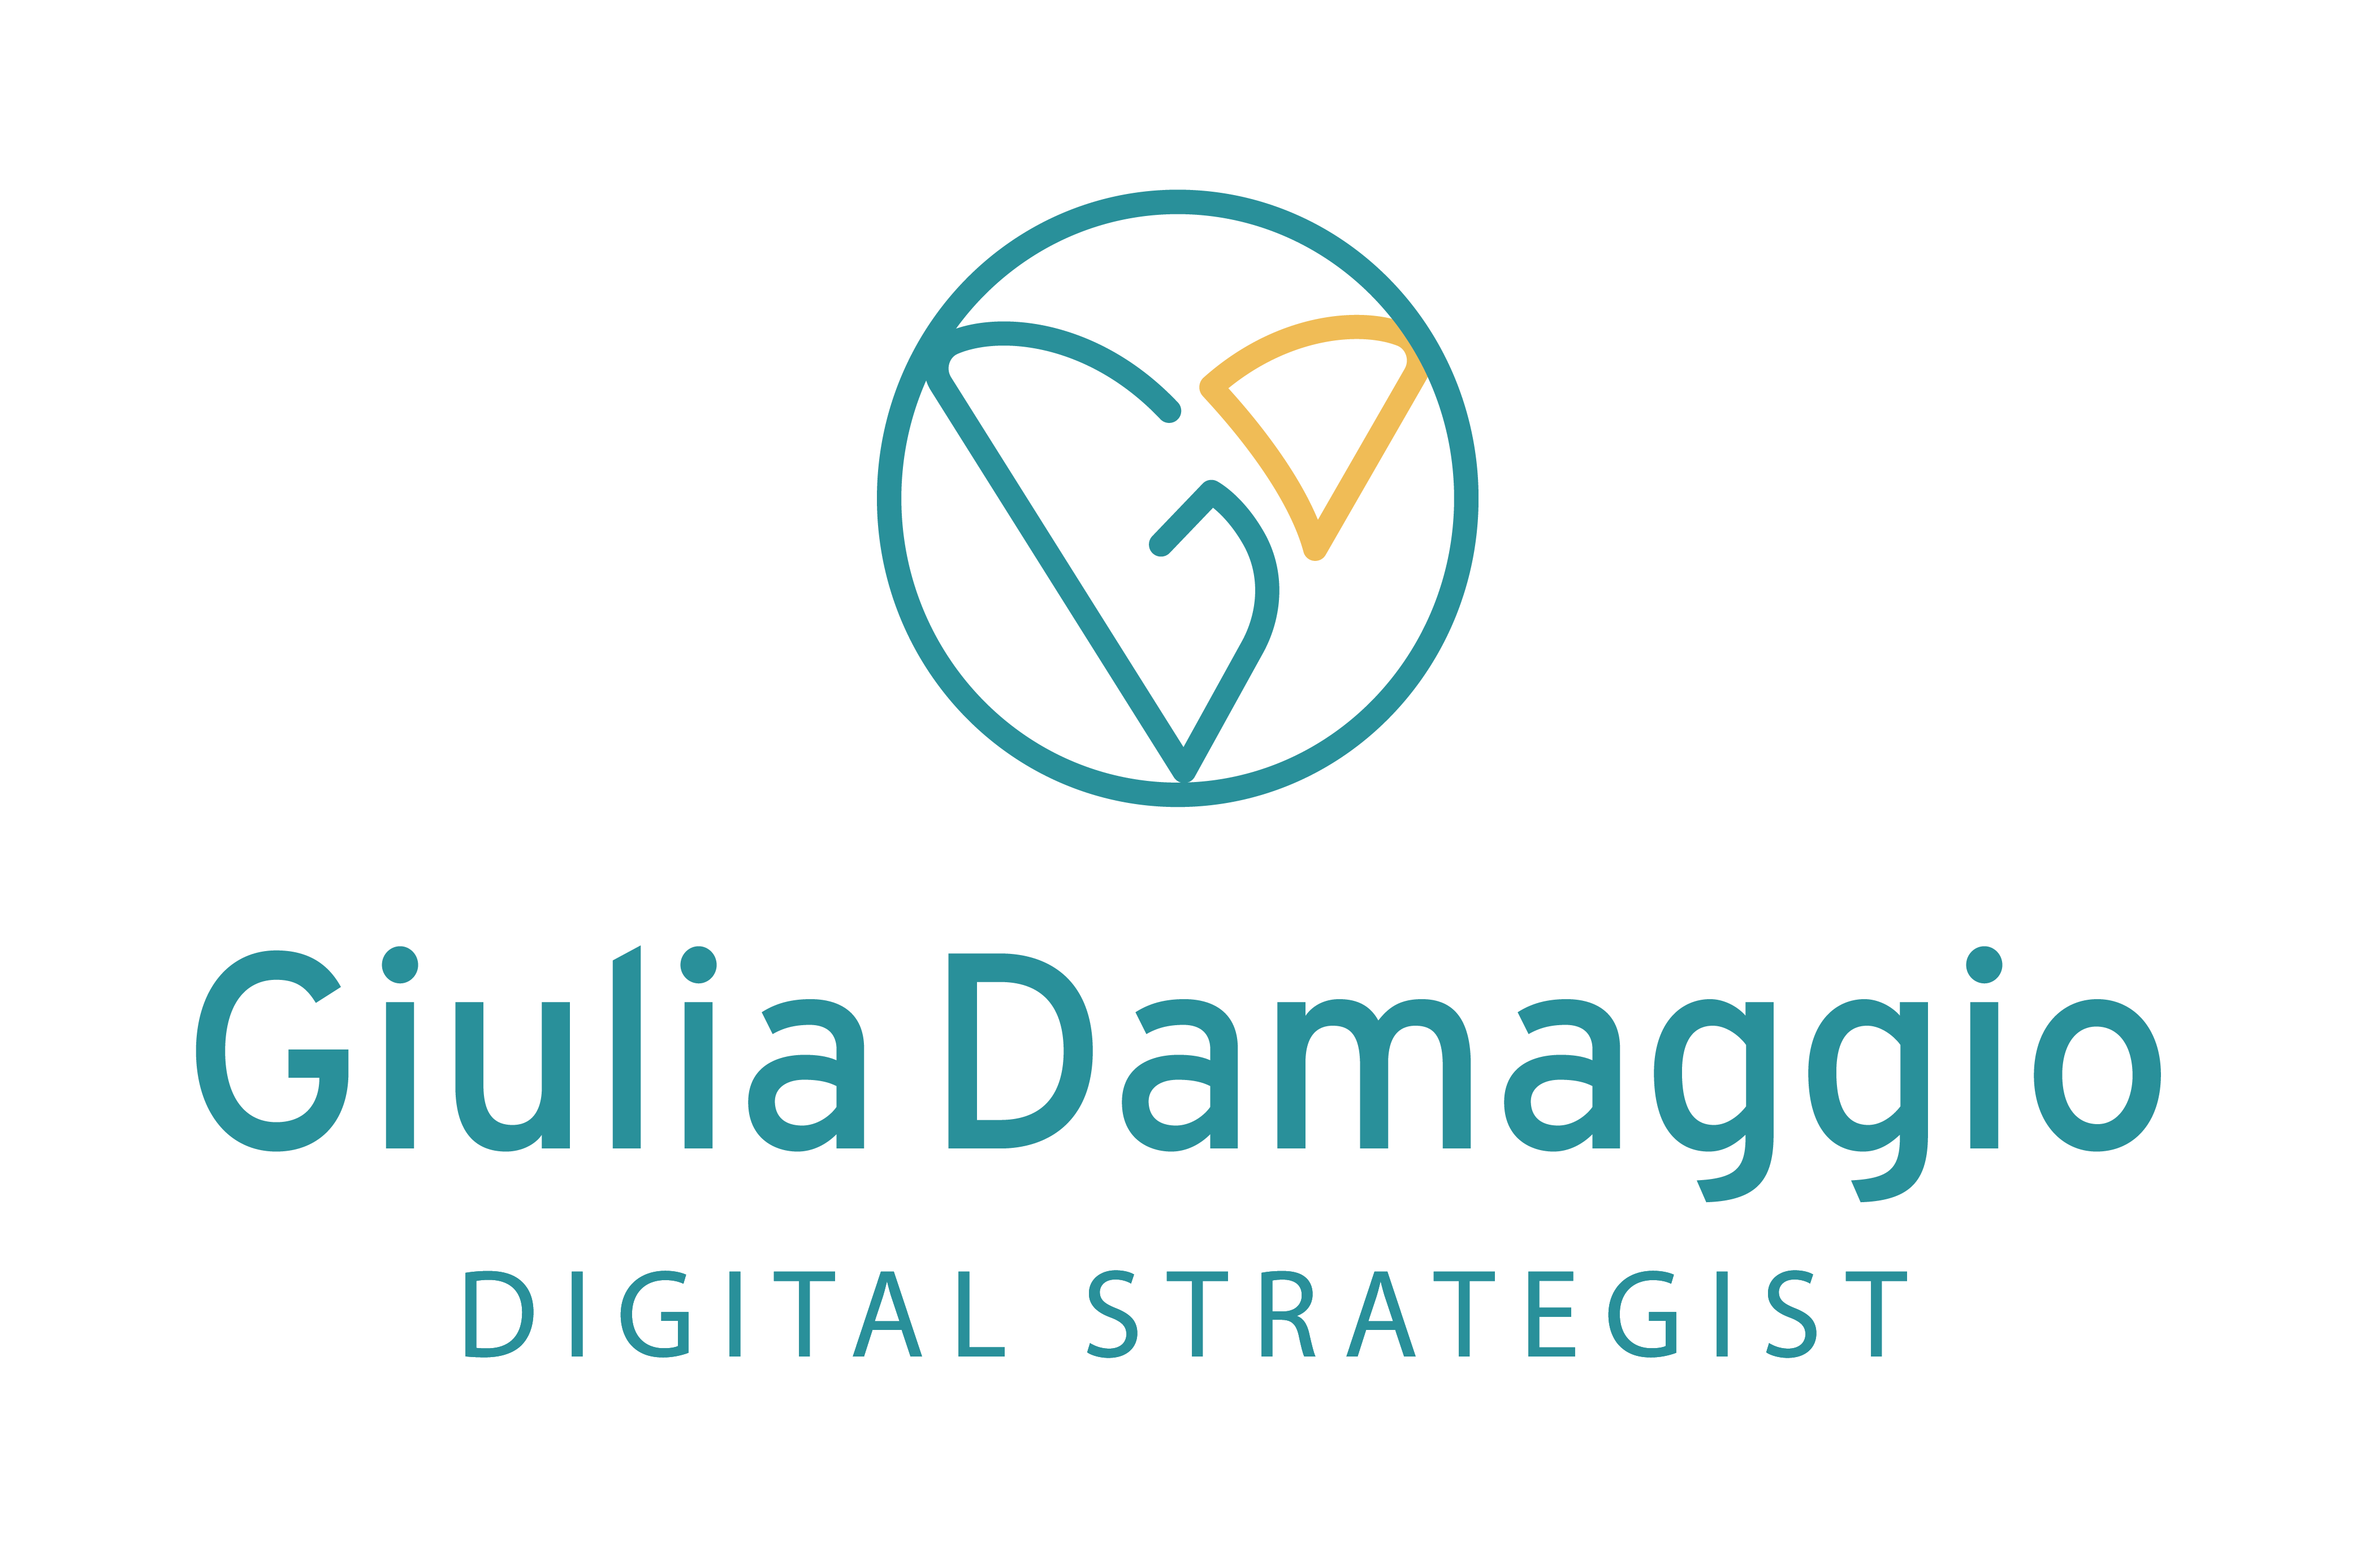 Digital Strategist - Giulia Damaggio